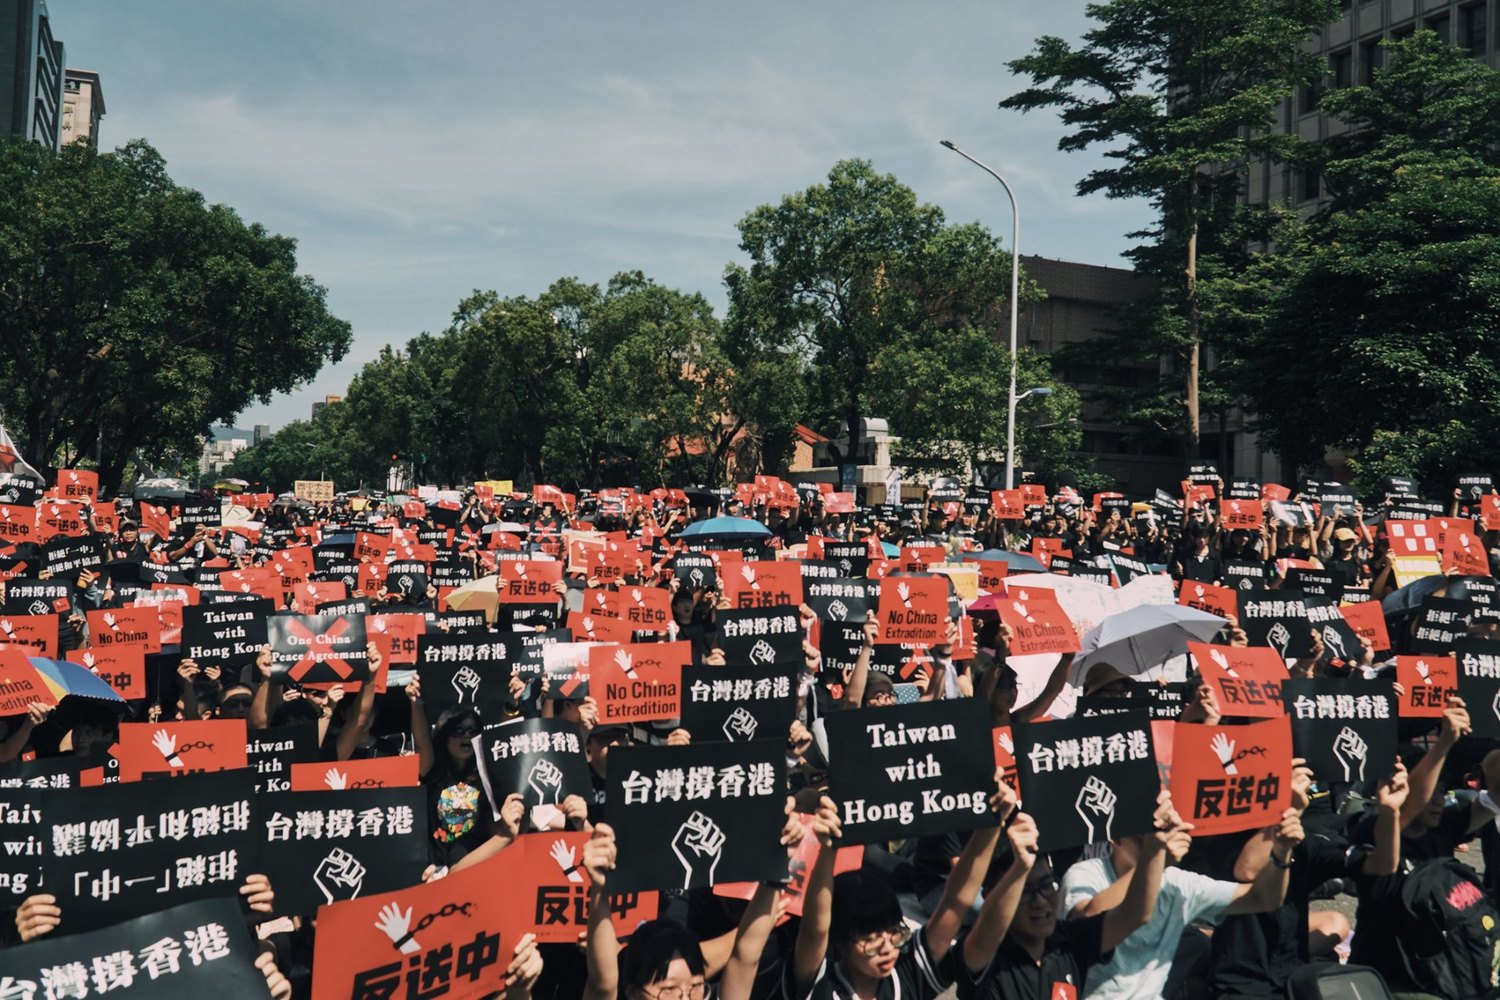 他們強調「在追求民主自由的路上，台灣與香港一直並肩，作為支撐彼此的朋友」。   圖/翻攝自香港邊城青年臉書